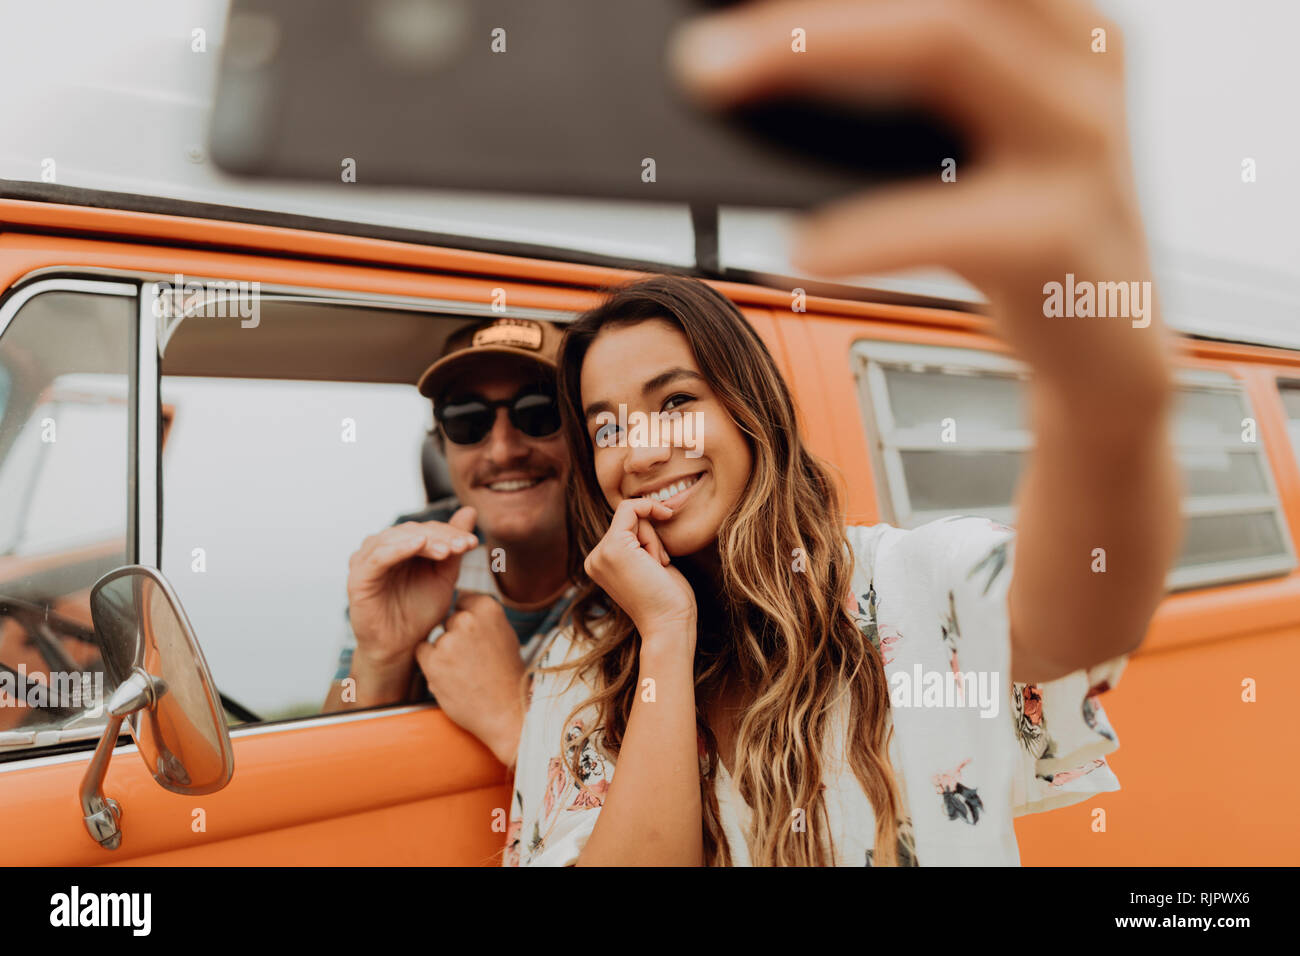 Una giovane coppia in viaggio nel veicolo per attività ricreative tenendo selfie smartphone, ritratto, Jalama, CALIFORNIA, STATI UNITI D'AMERICA Foto Stock